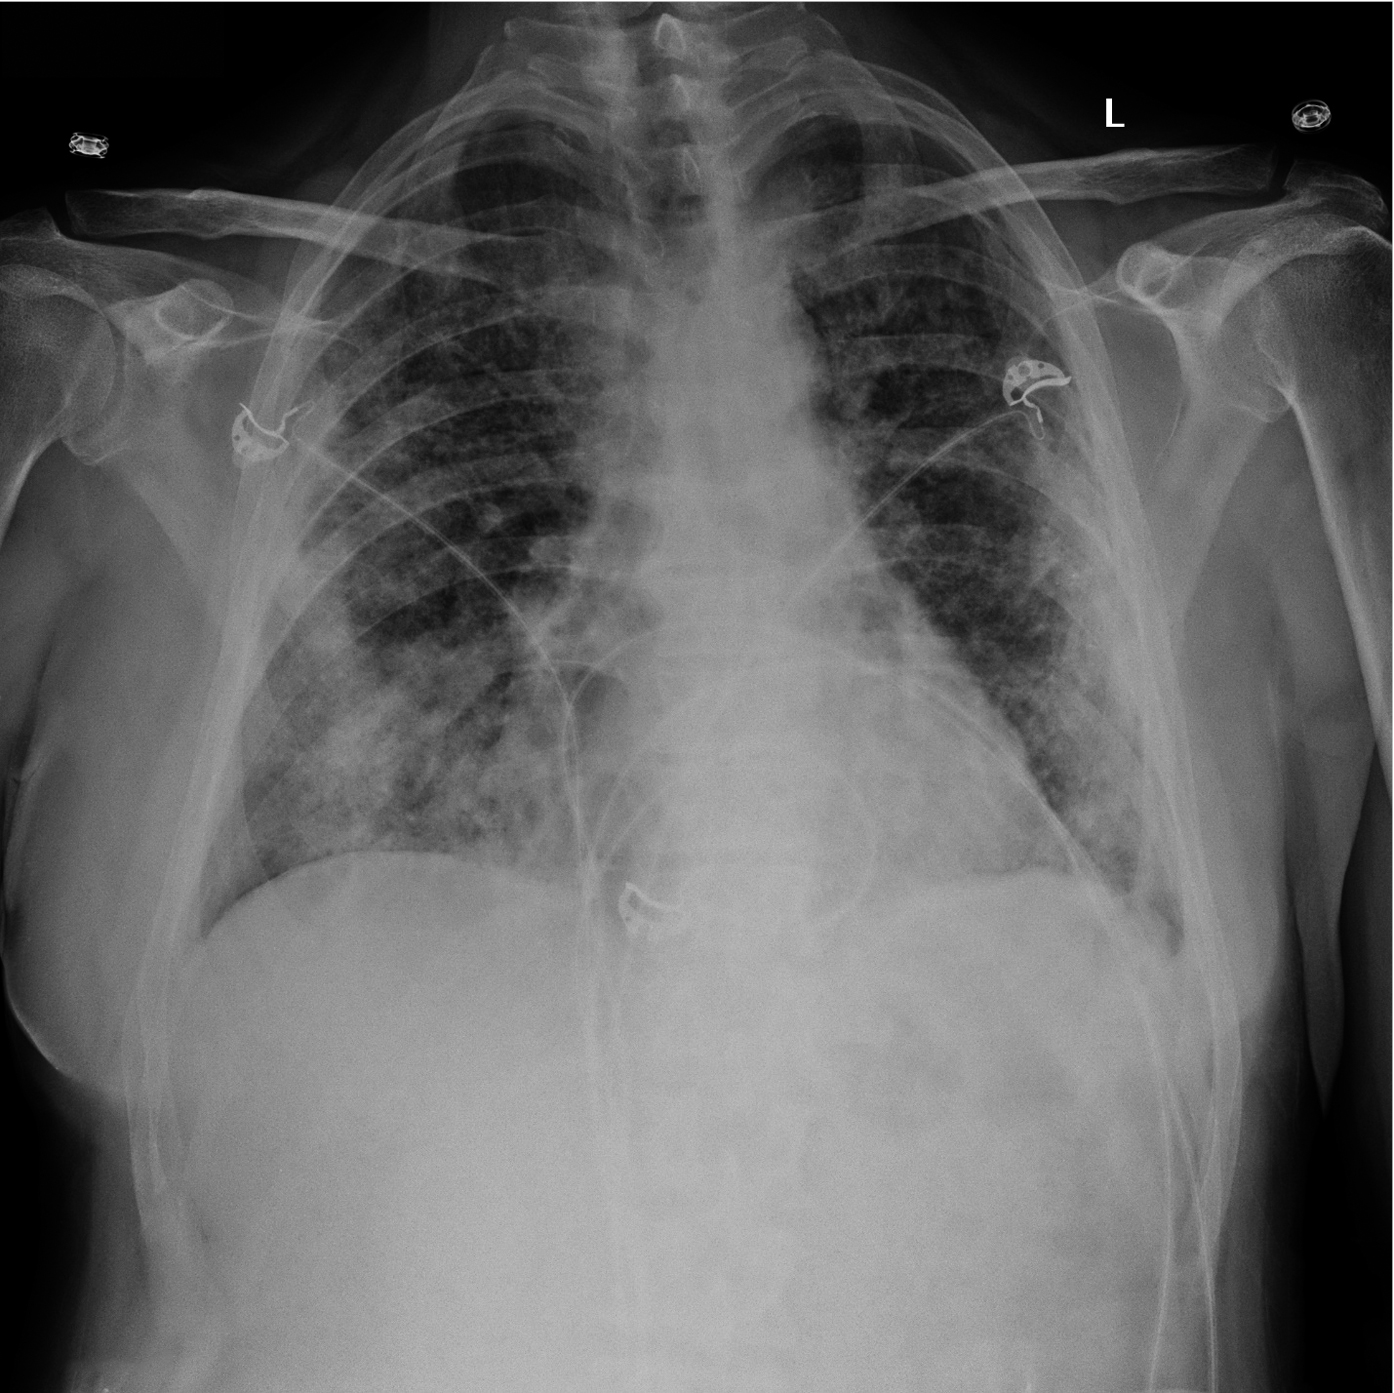  
Fig. 30.1-2.  Radiografía de tórax anteroposterior (AP). Paciente hombre de 65 años (caso n.º 2) con tos y fiebre. Opacidades difusas y moteadas en ambos pulmones, predominantemente en lóbulos inferiores y zonas periféricas 